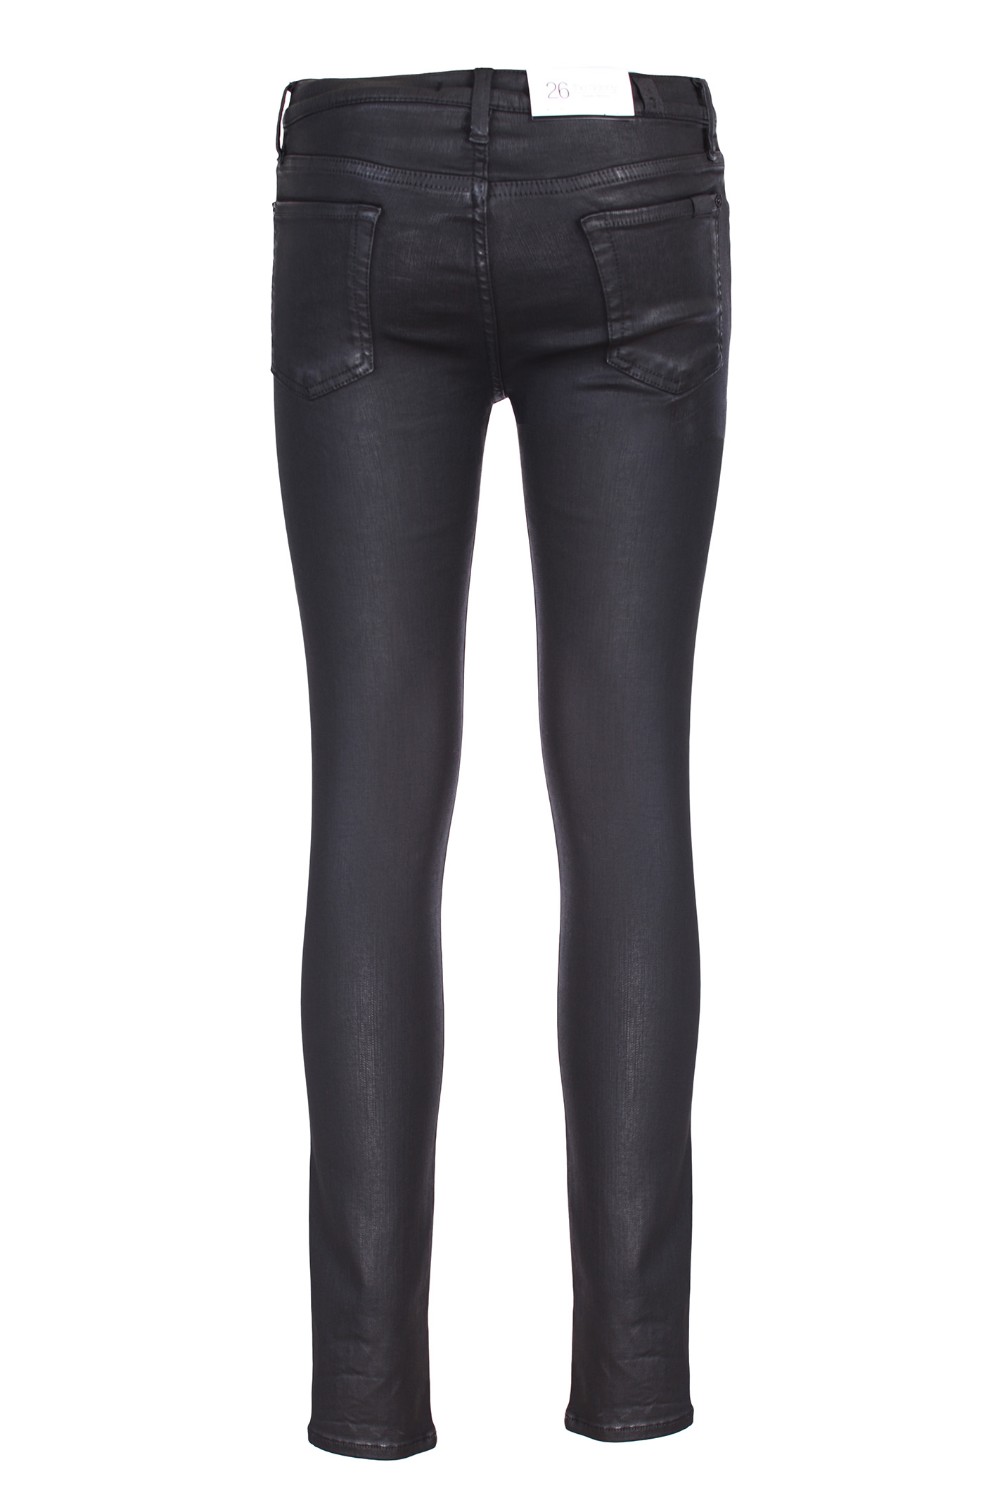 shop SEVEN  Jeans: Seven jeans "The Skinny".
Modello dal design 5-tasche.
Chiusura con zip e bottone.
Realizzato con denim "Slim Illusion" spalmato nero.
Composizione: 85% cotone 10.5% poliestere 4.5% elastan.
Made in Italy.. JSWTV500KK-N number 874139